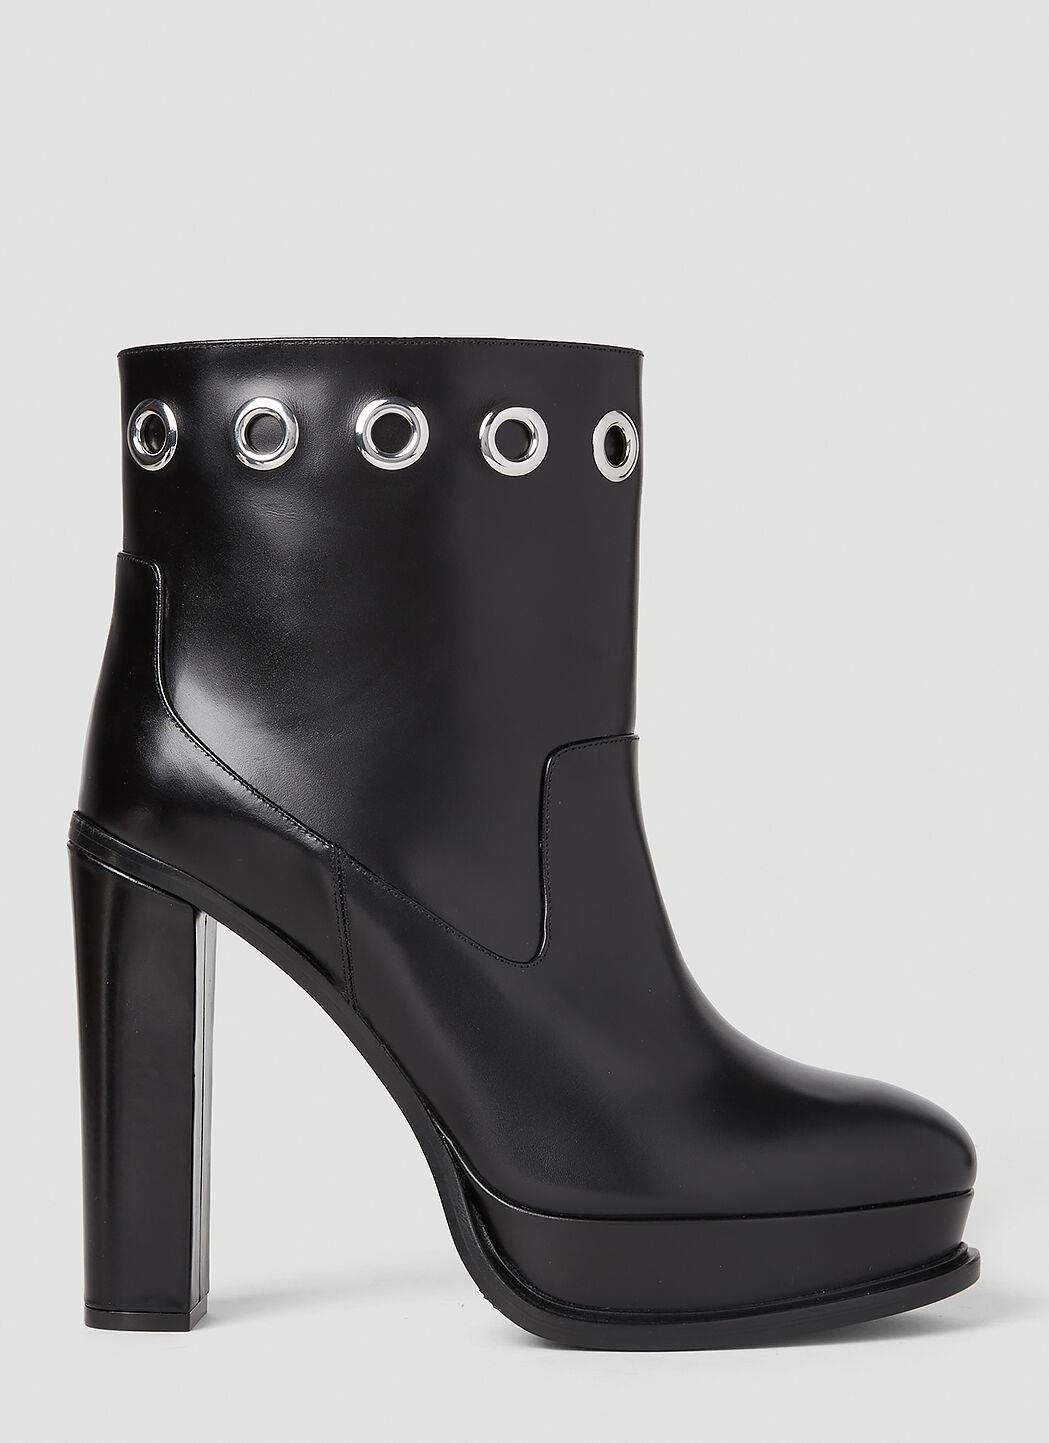 Alexander McQueen Eyelet Heeled Boots Black amq0252012